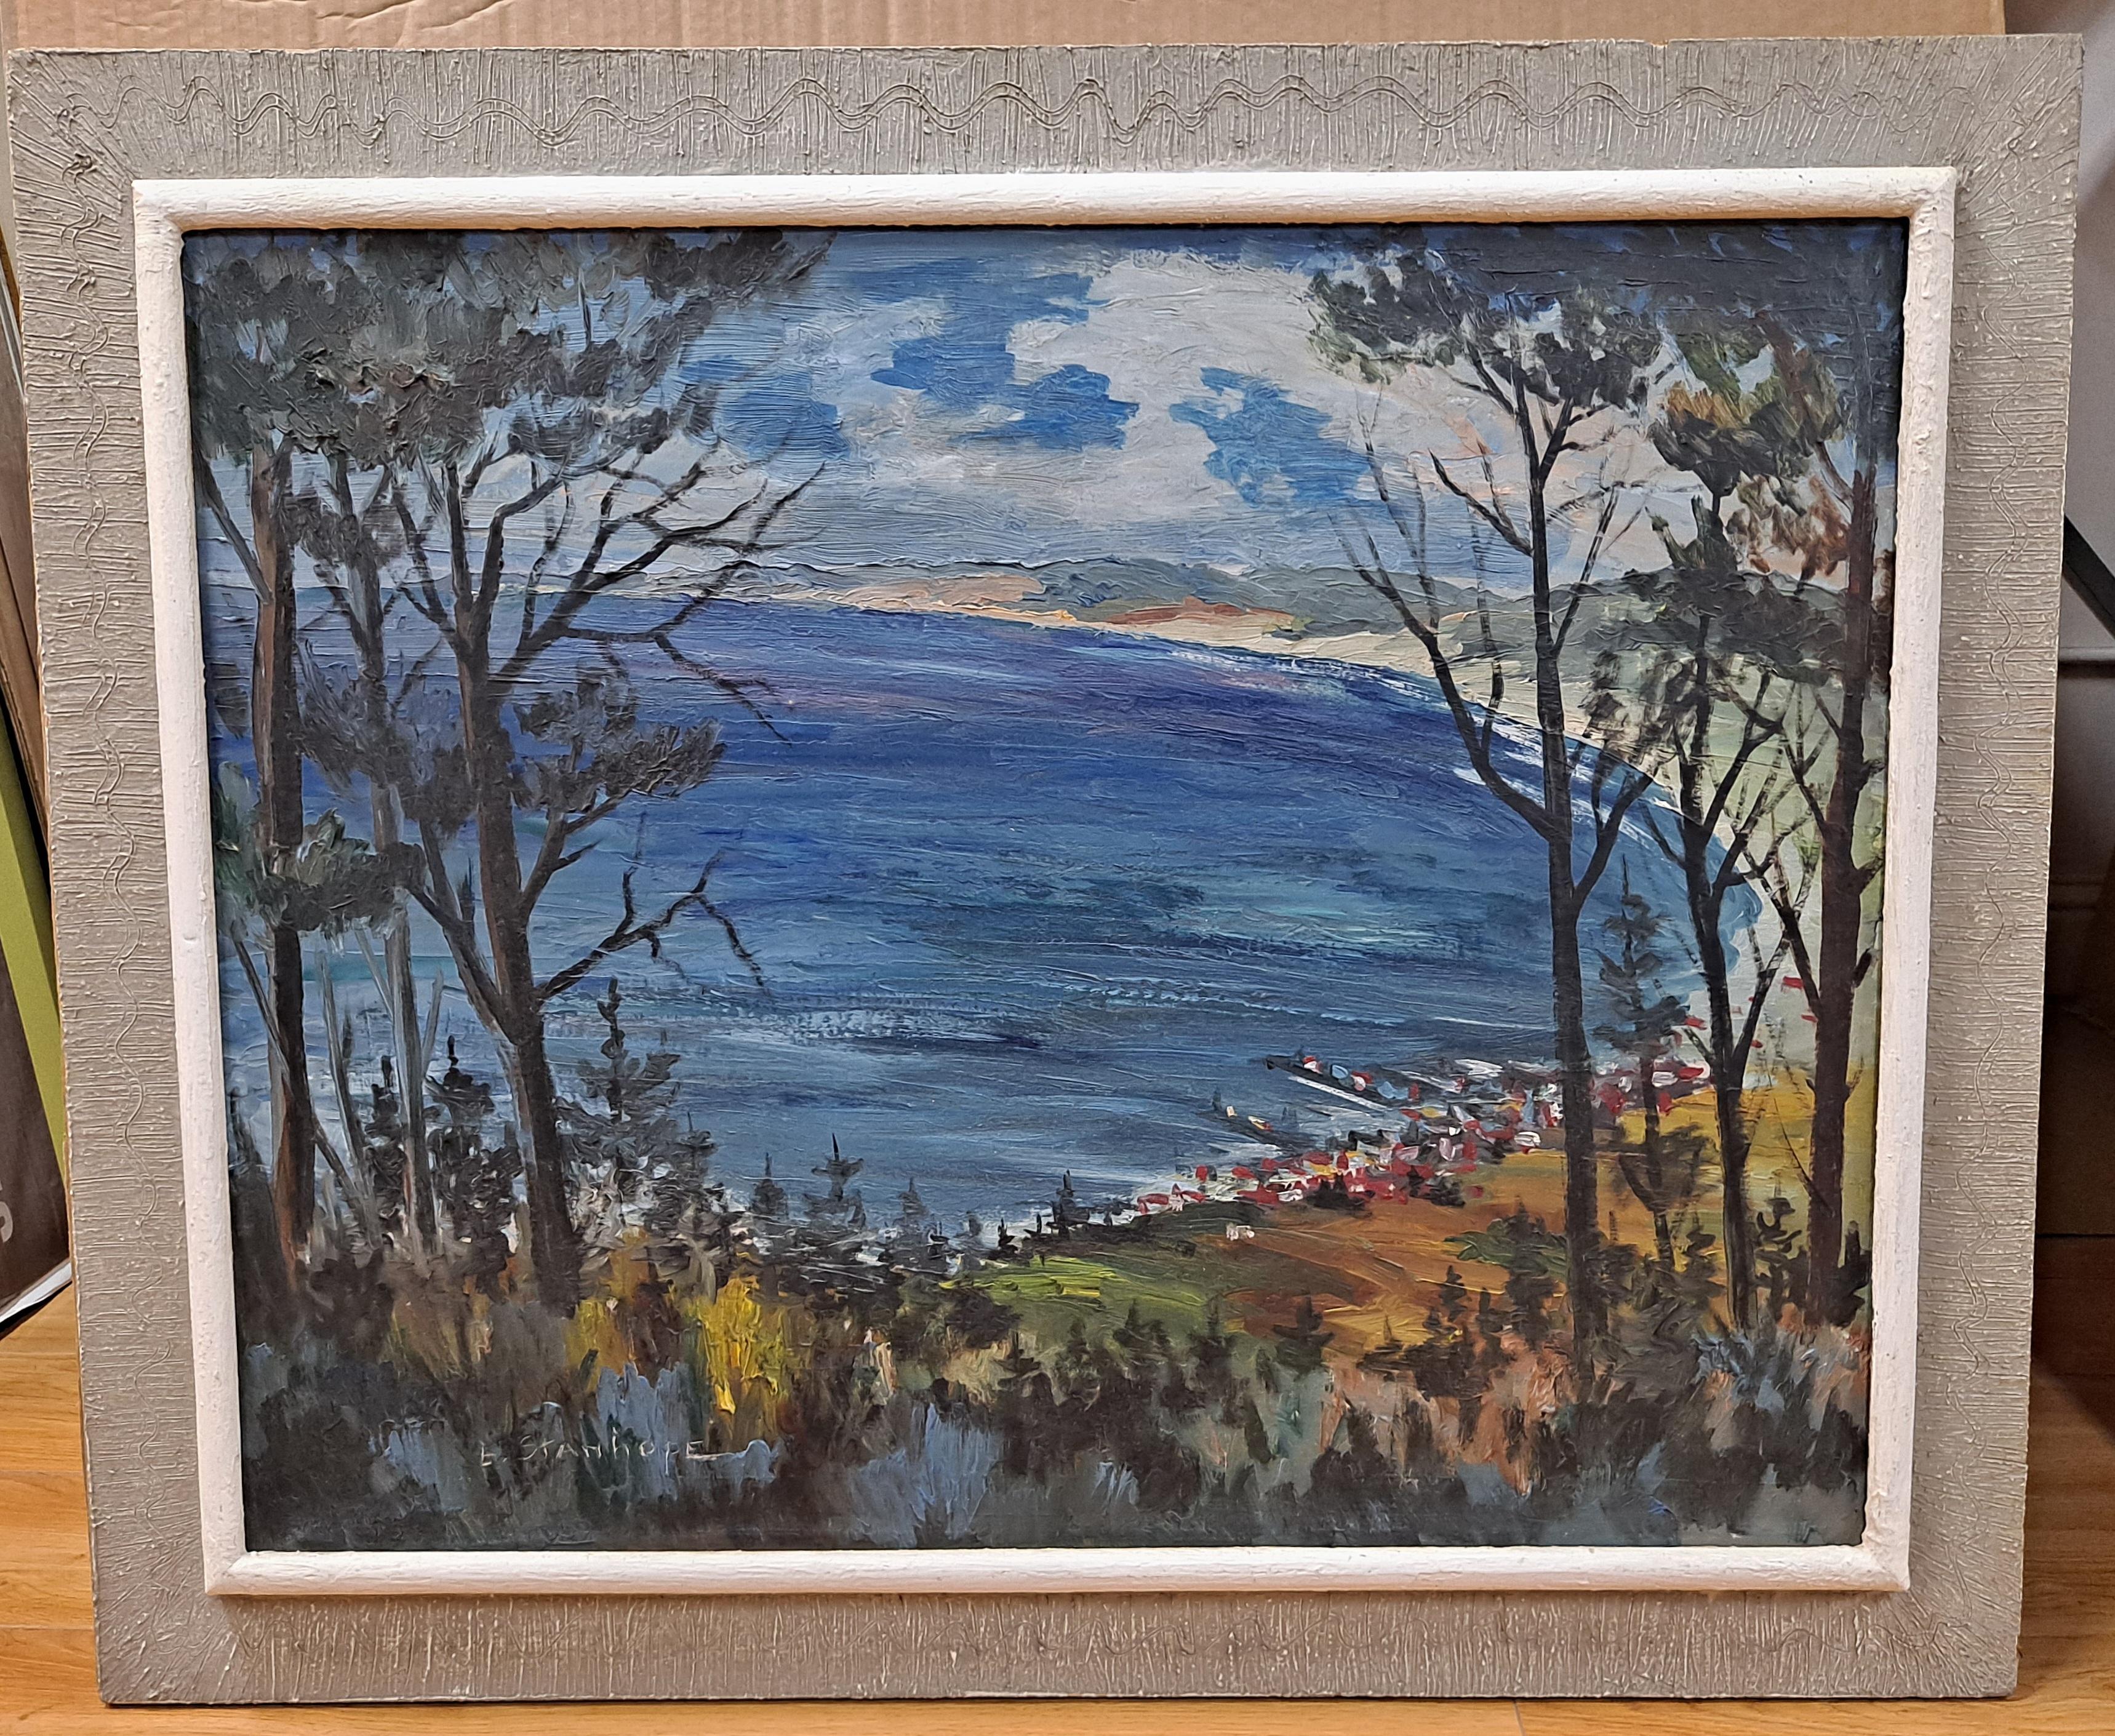 Magnifique paysage impressionniste des années 1940 par Elmer Stanhope (1907-1956)
Intitulé "Monterey Bay" (Baie de Monterey)
Huile sur toile
La toile mesure 24" x 30", tandis que le cadre mesure 30" x 36"